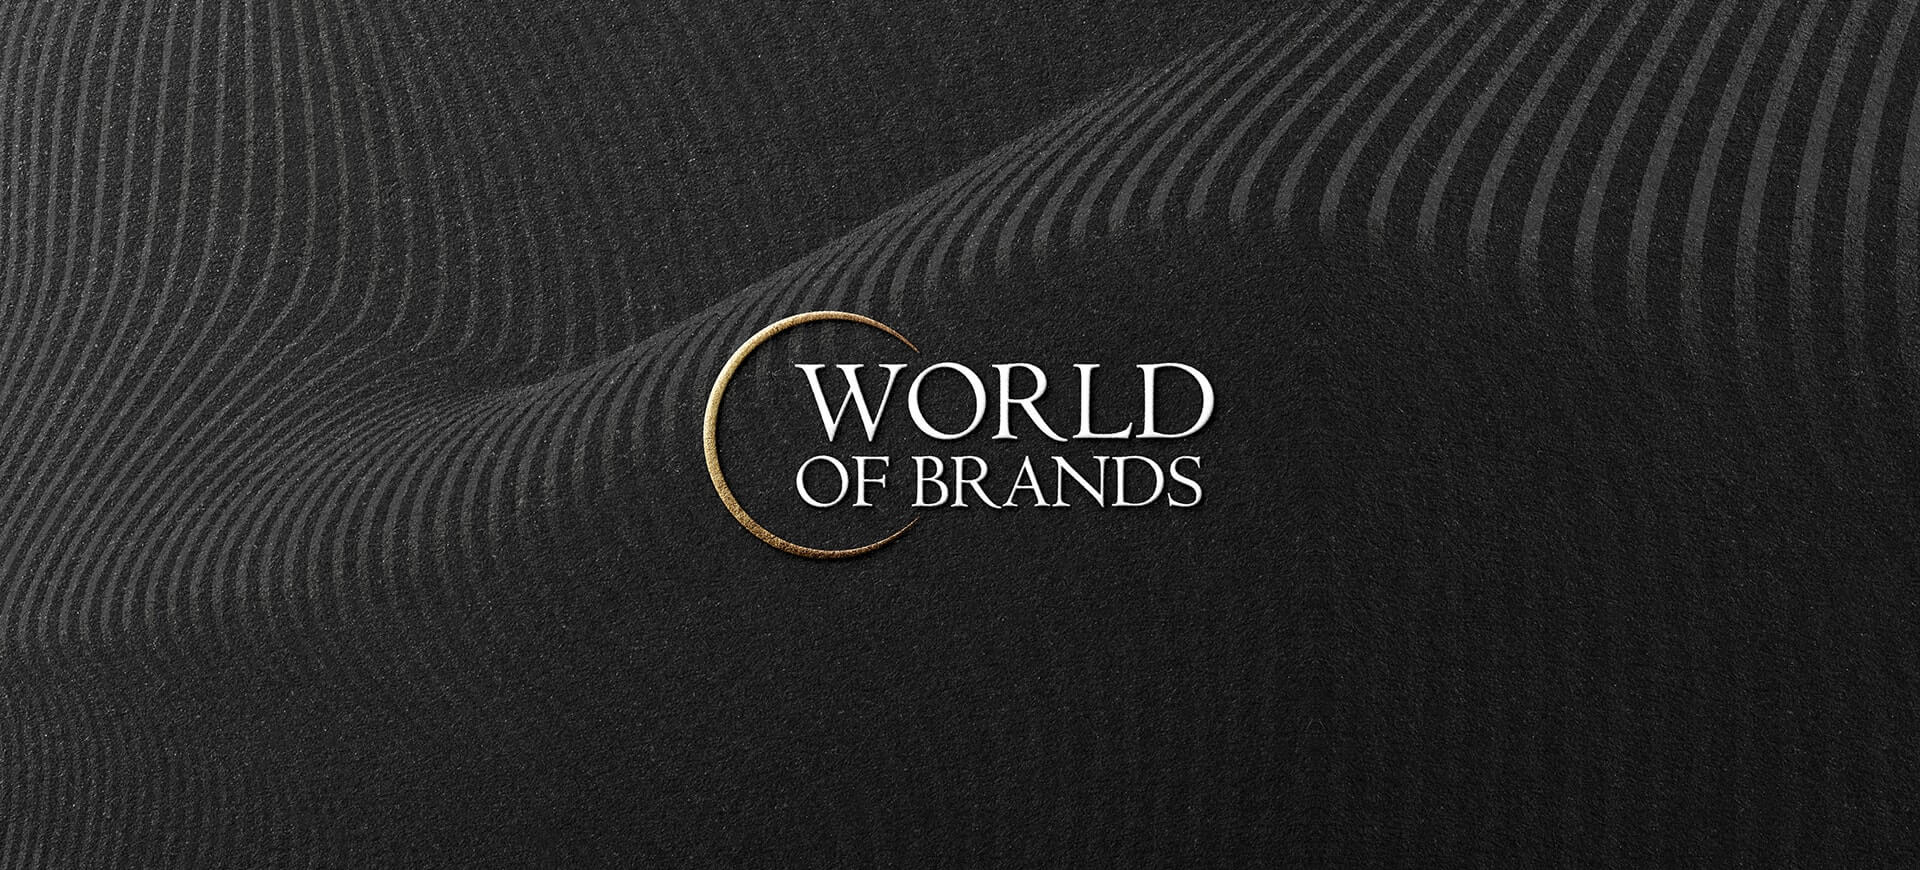 branding agency in india